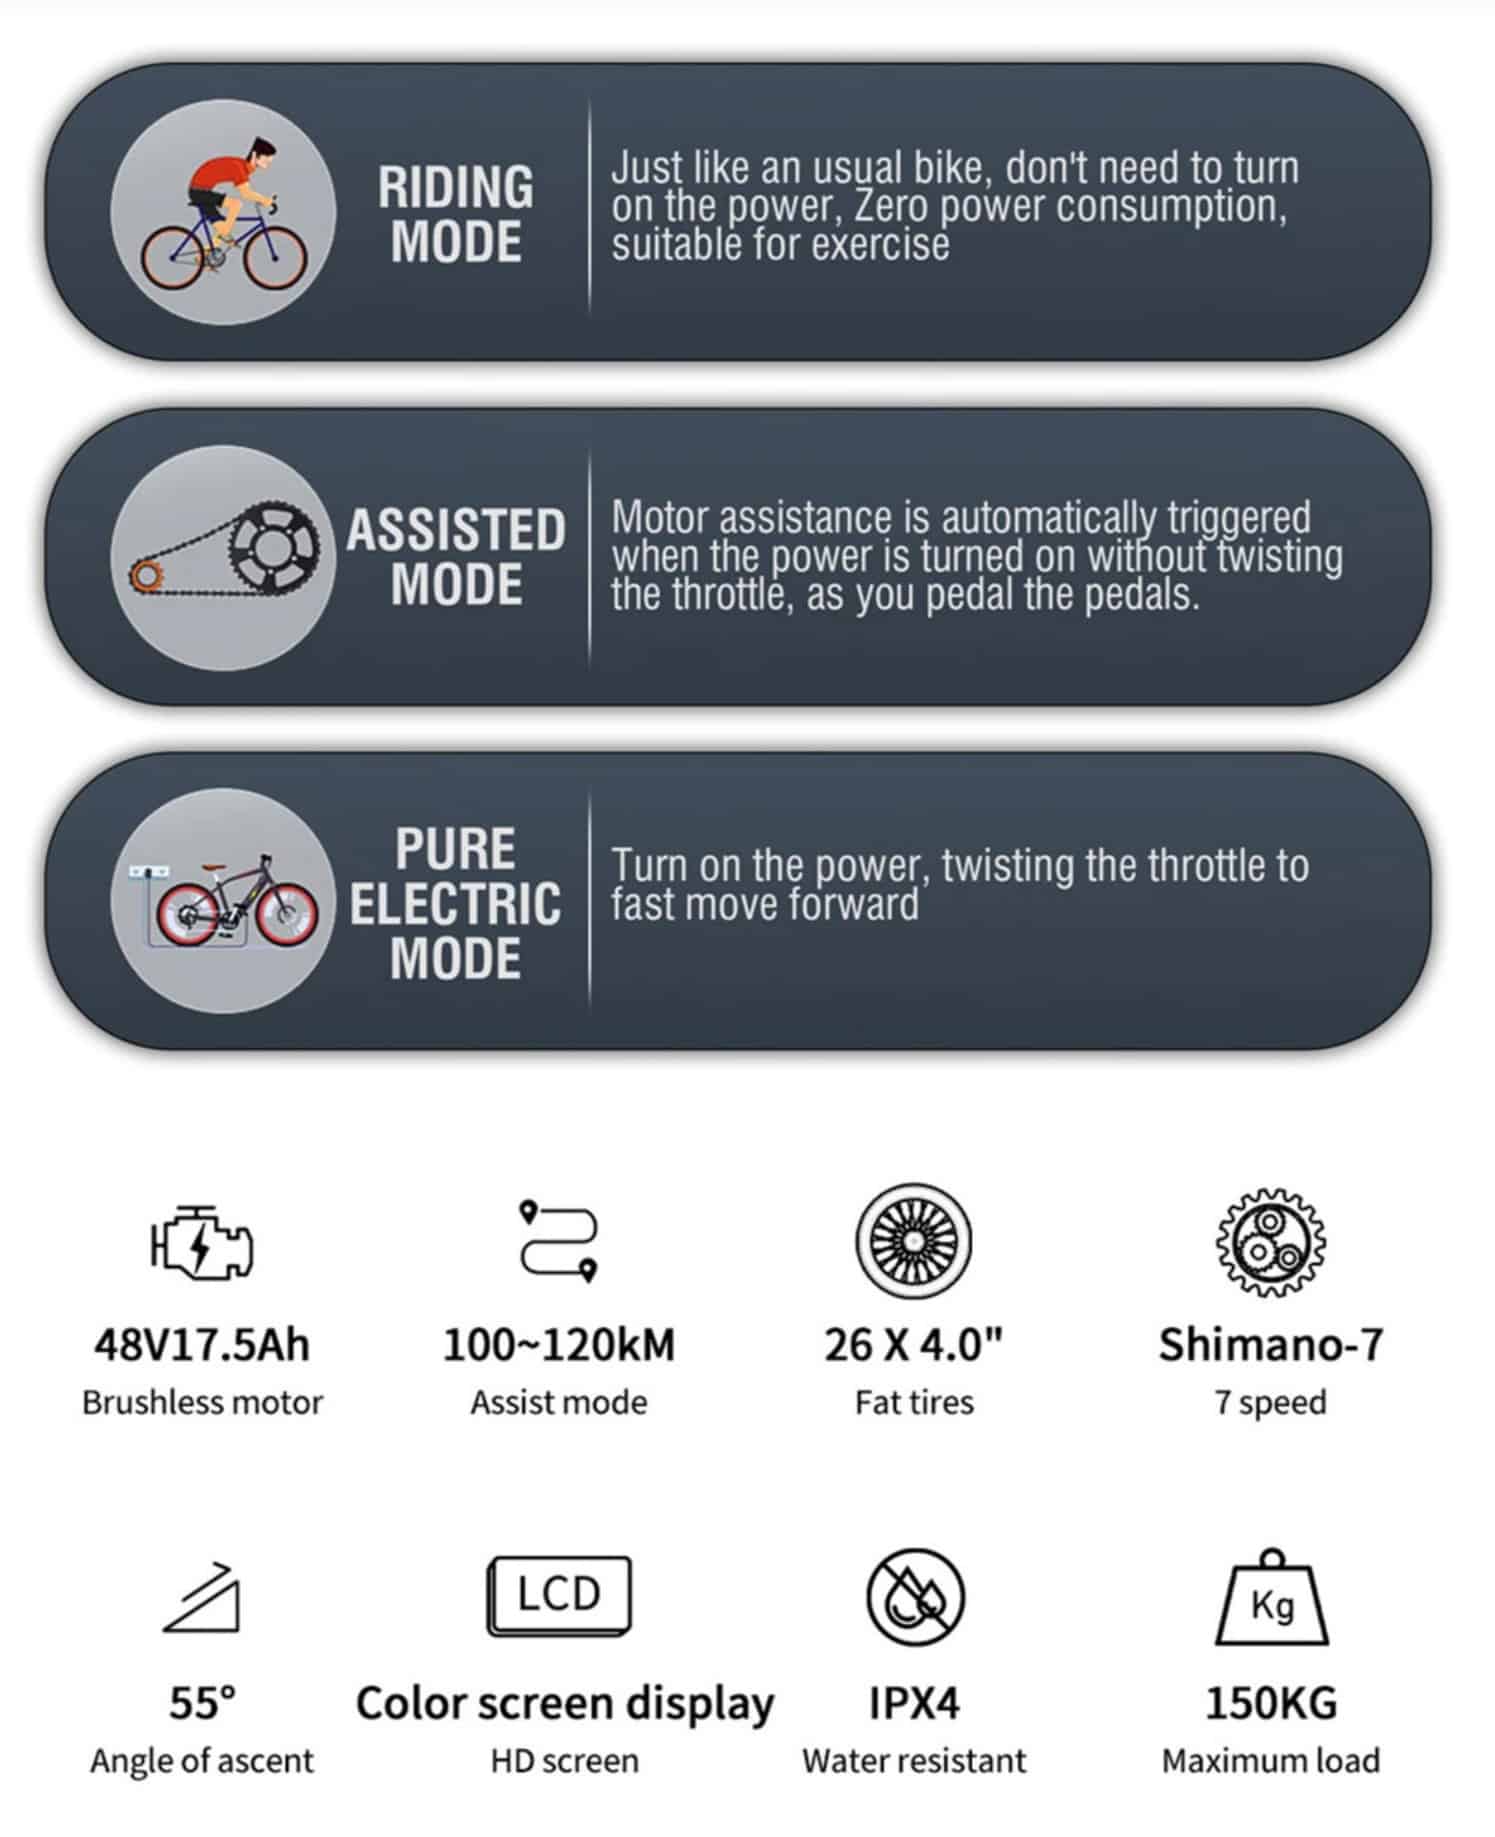 ηλεκτρικό ποδήλατο DUOTTS F26, Το μέλλον της ηλεκτρικής ποδηλασίας: Μια ματιά στο ηλεκτρικό ποδήλατο DUOTTS F26